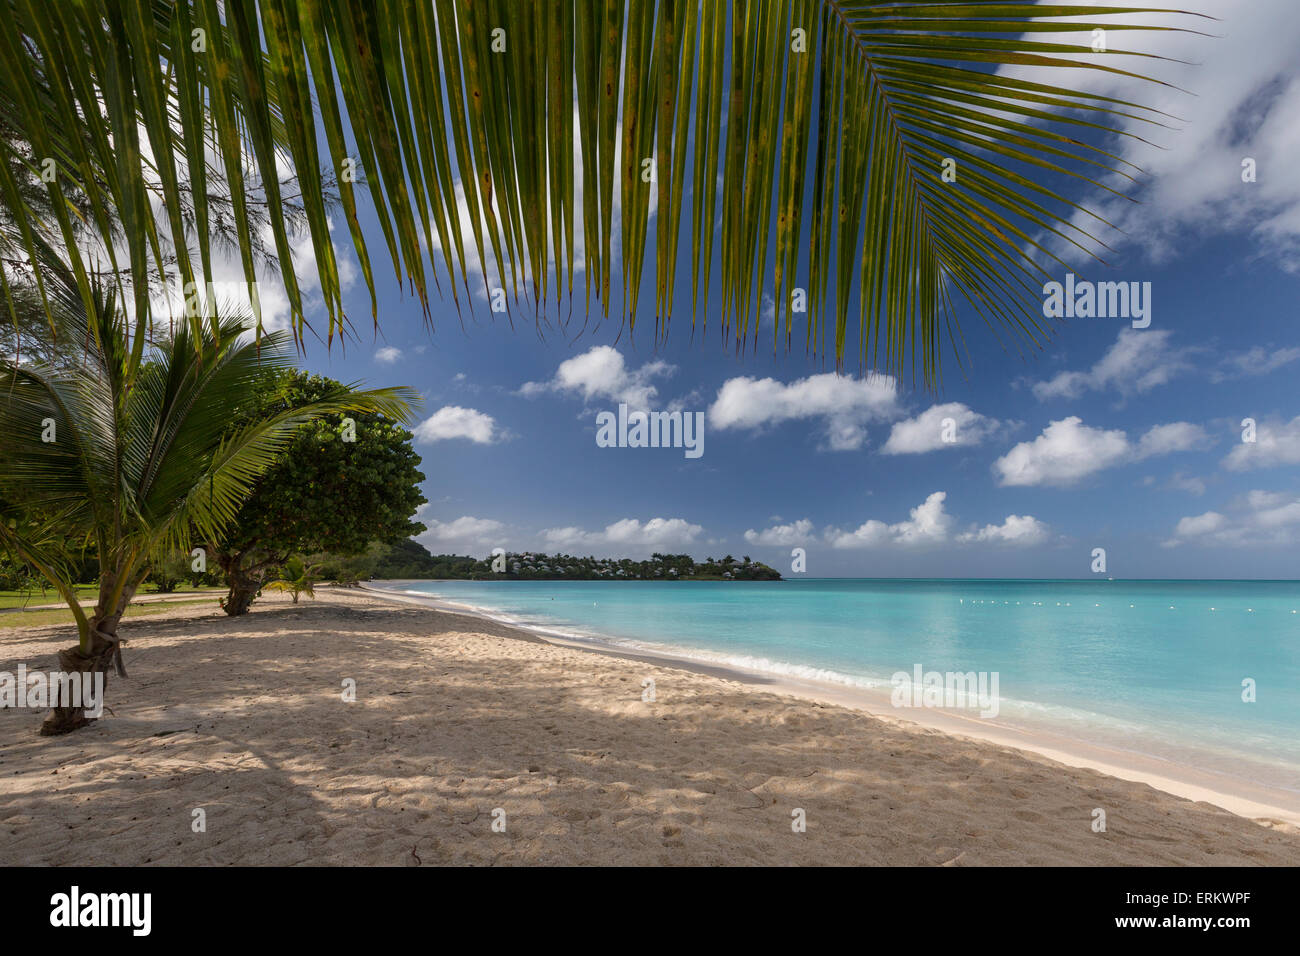 Les feuilles des palmiers masquer le ciel au-dessus de la plage de Valley Church qui offre des plages de sable blanc dans les eaux de la baie de gaïac, Antigua Banque D'Images